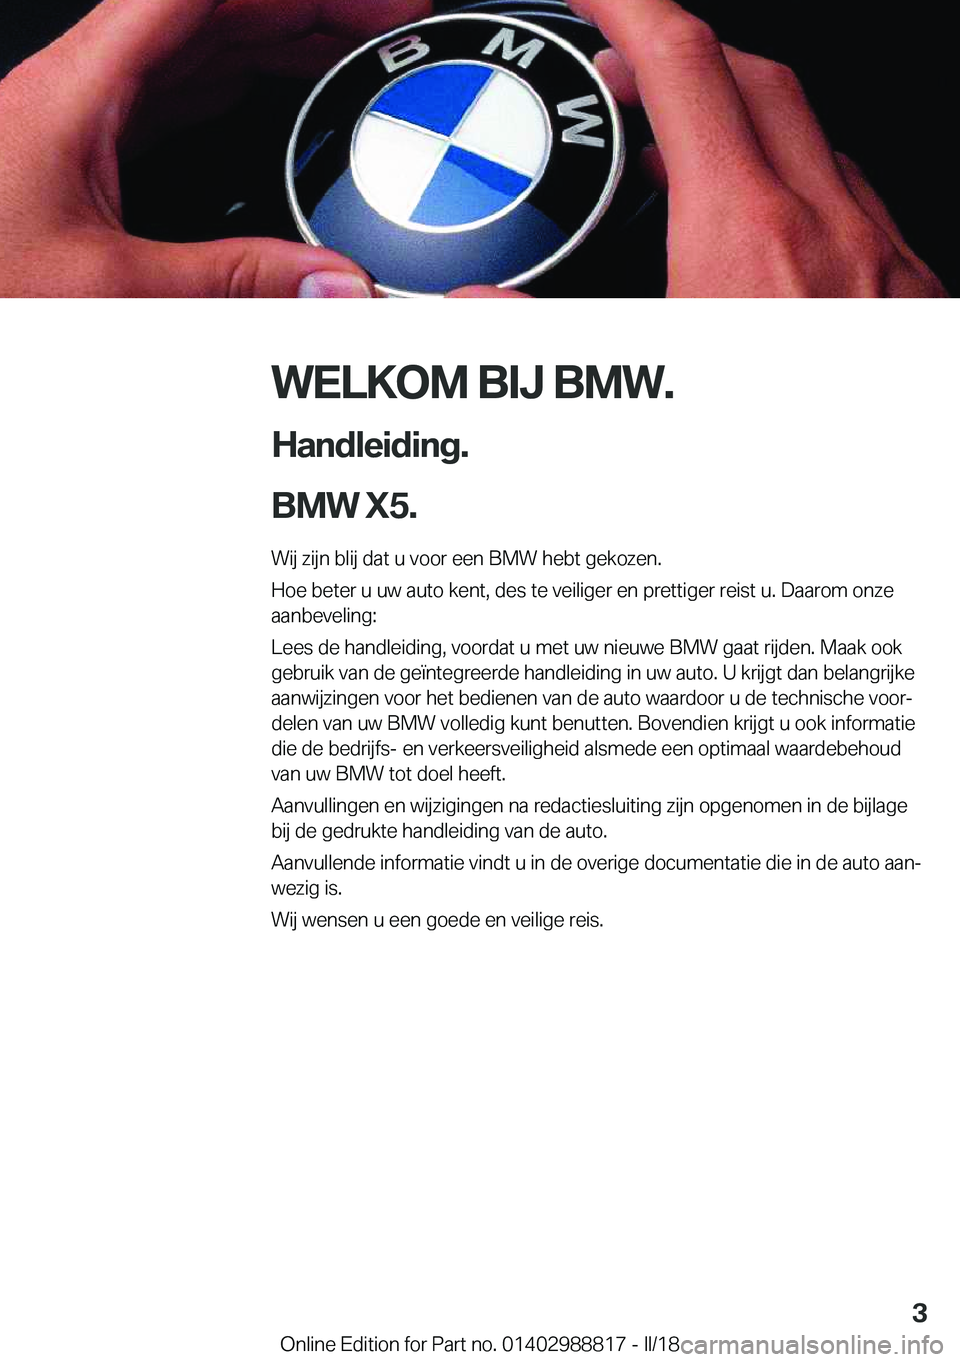 BMW X5 2018  Instructieboekjes (in Dutch) �W�E�L�K�O�M��B�I�J��B�M�W�.
�H�a�n�d�l�e�i�d�i�n�g�.
�B�M�W��X�5�. �W�i�j� �z�i�j�n� �b�l�i�j� �d�a�t� �u� �v�o�o�r� �e�e�n� �B�M�W� �h�e�b�t� �g�e�k�o�z�e�n�.�H�o�e� �b�e�t�e�r� �u� �u�w� �a�u�t�